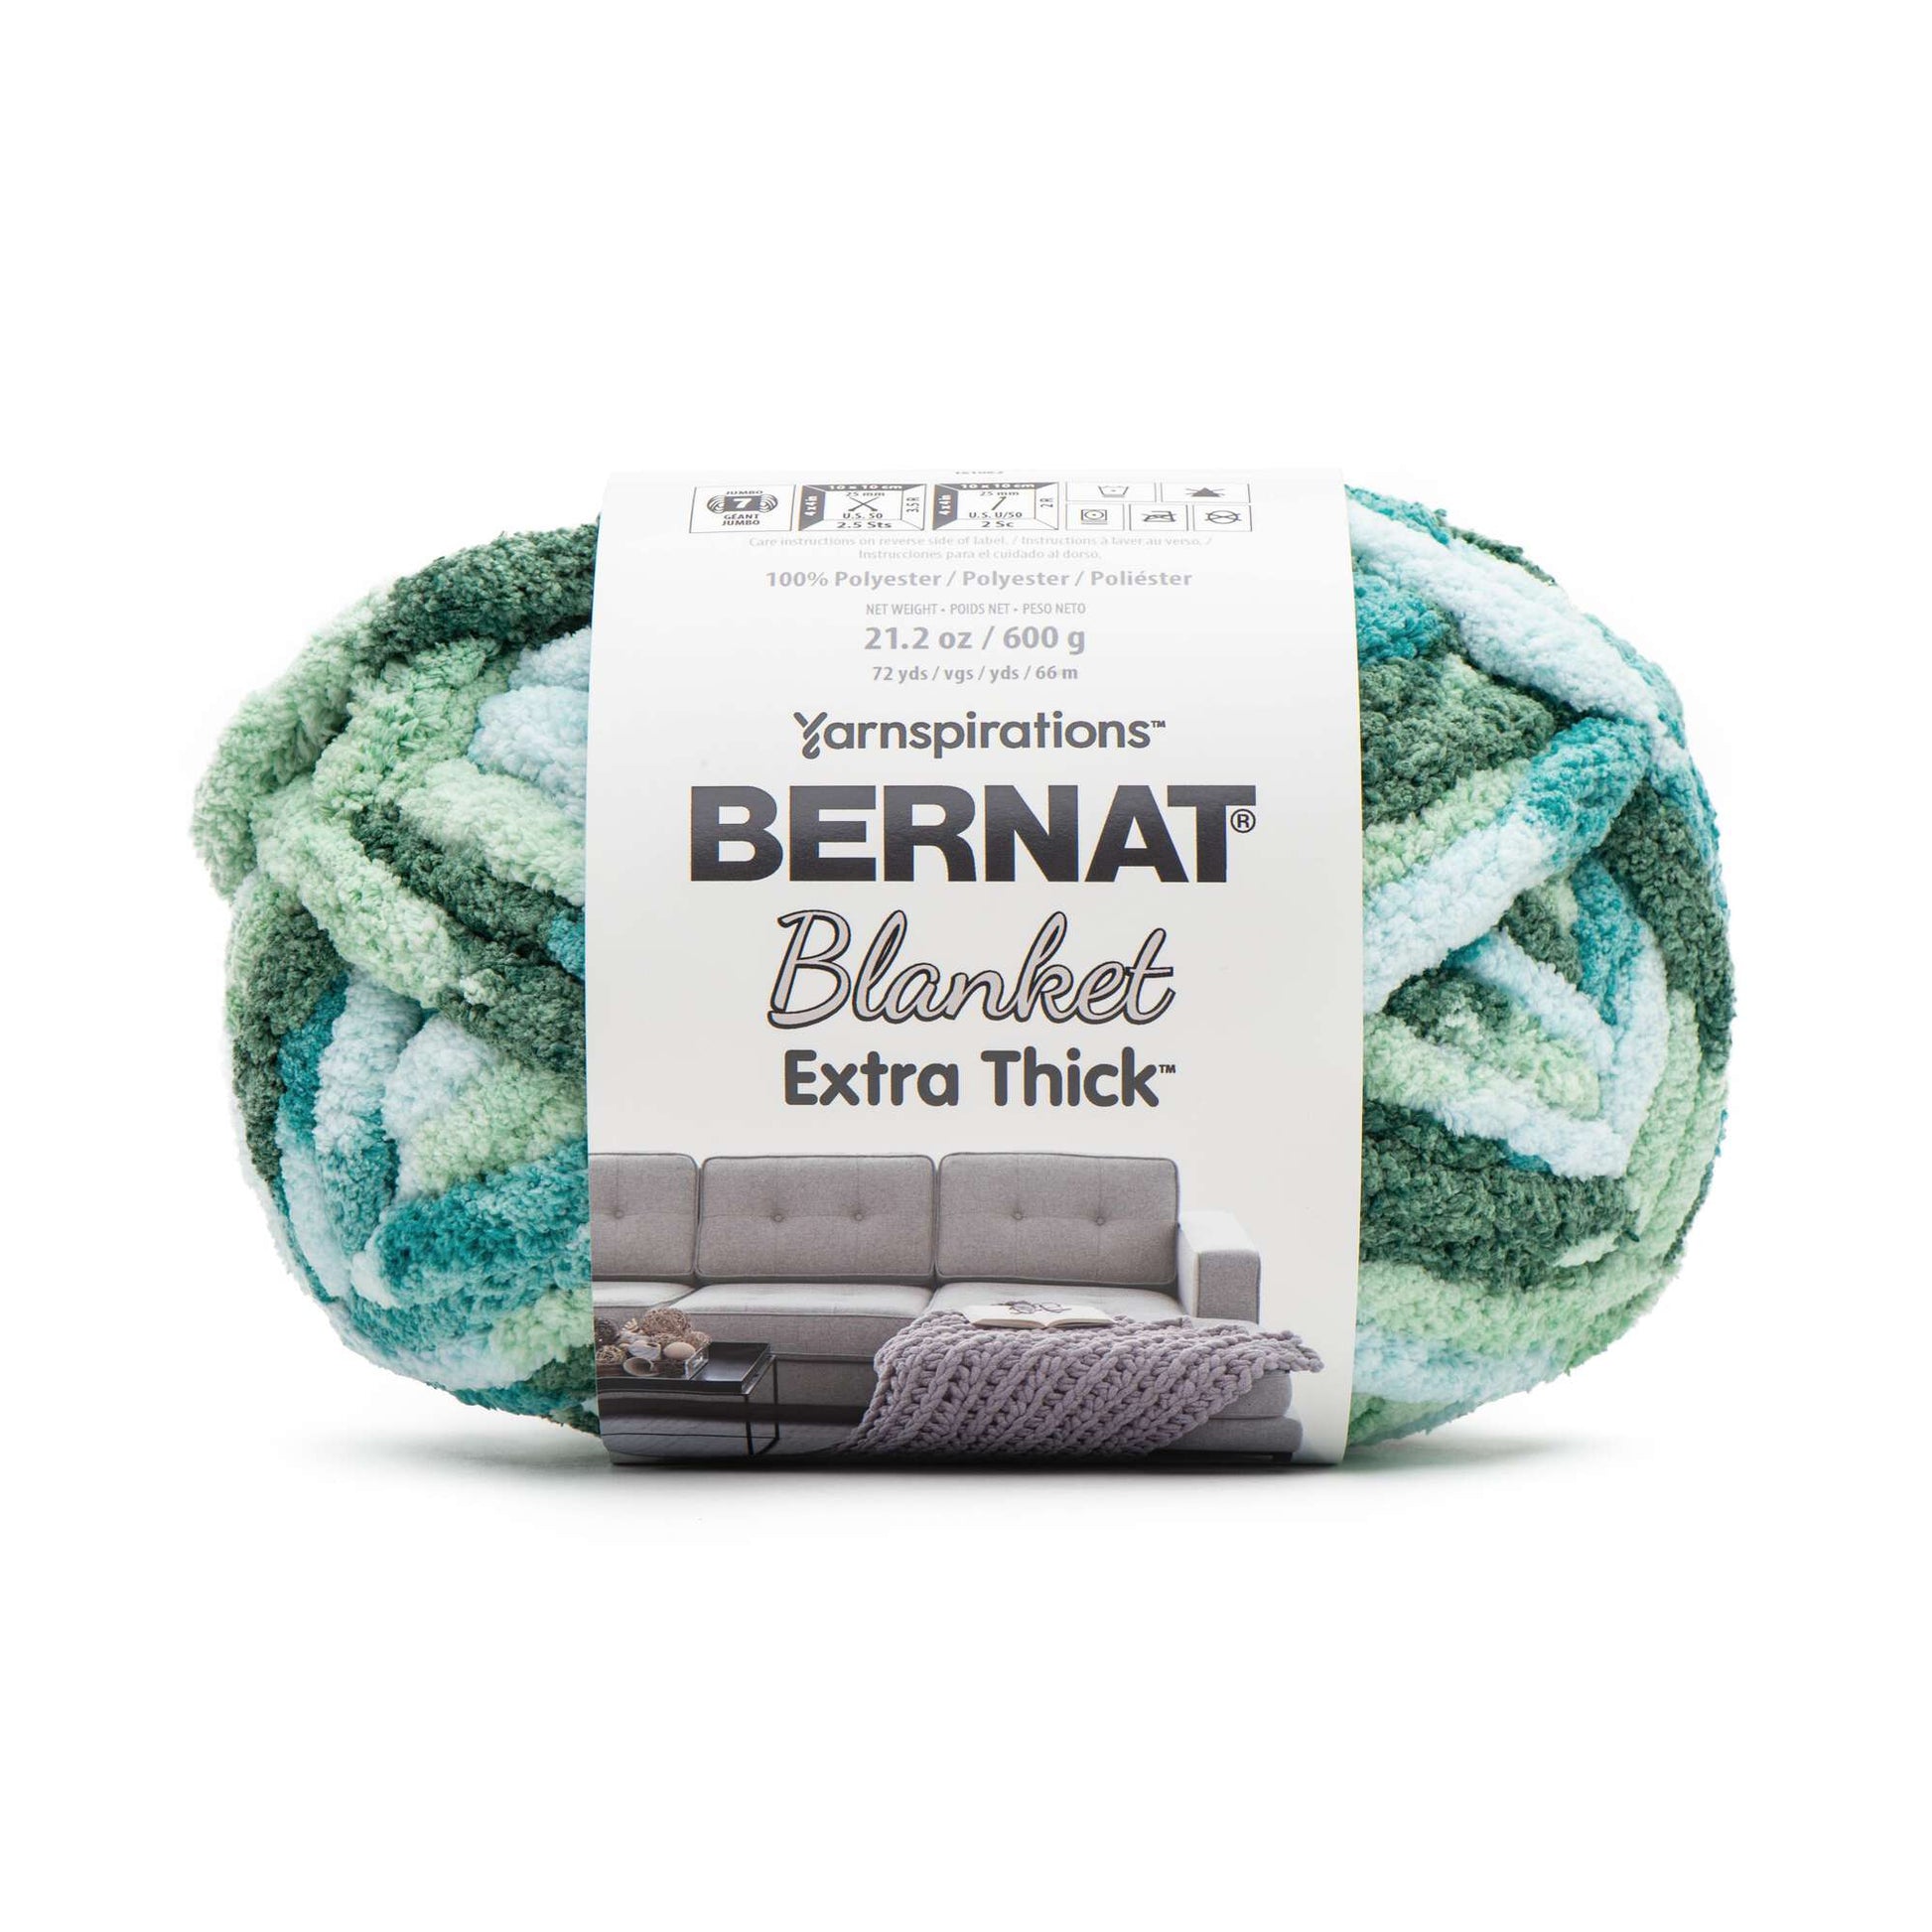 Bernat® Blanket Big™ Yarn curated on LTK